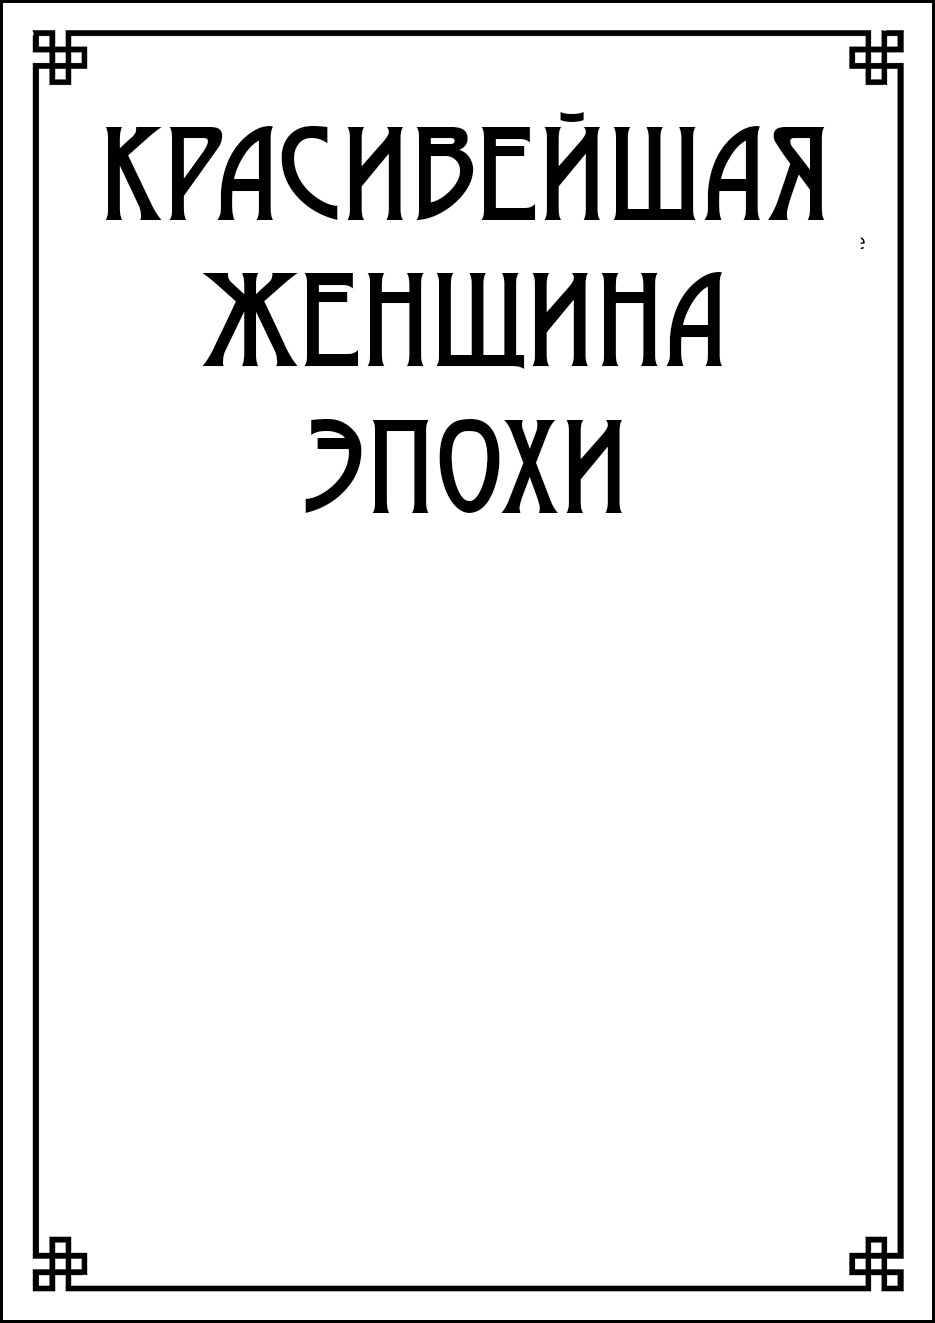 Репродукция к басне 7 «Василёк» И.А. Крылова 